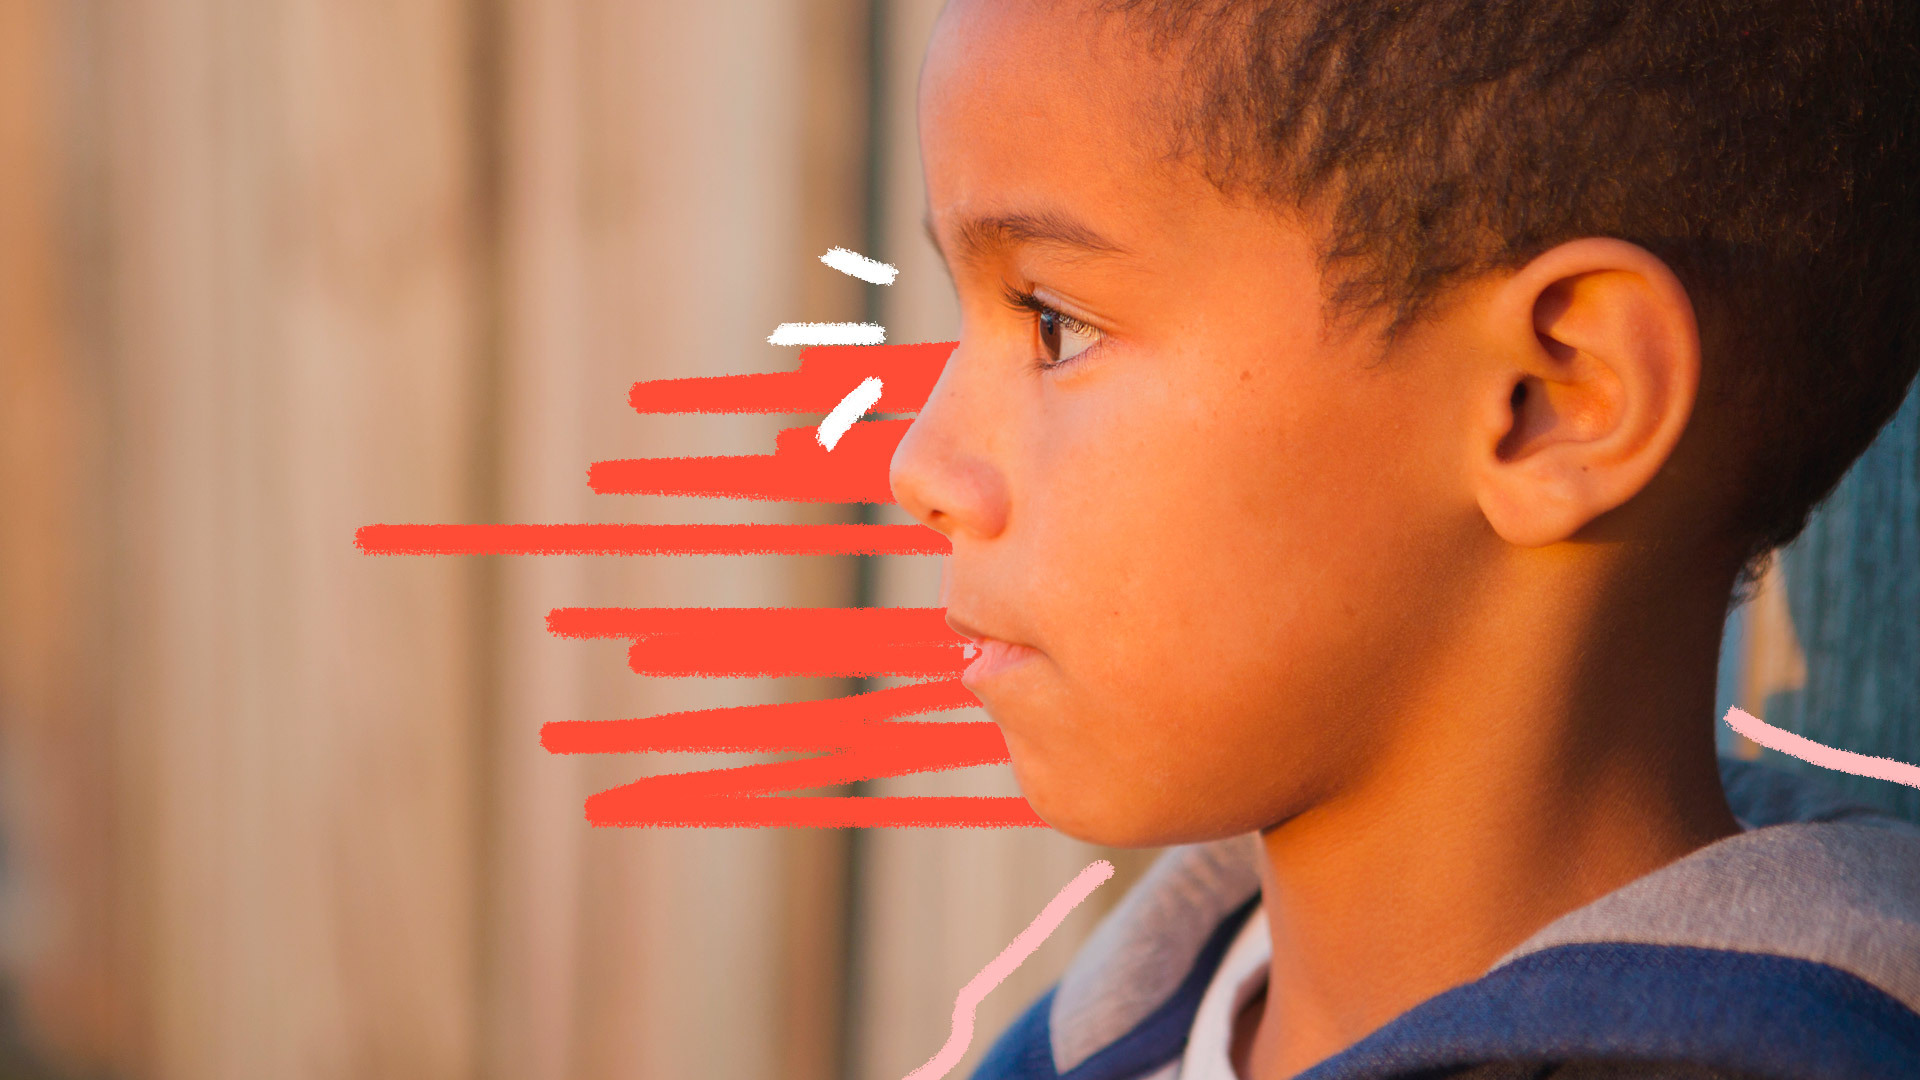 Perfil de um menino negro olhando para o lado esquerdo da tela.